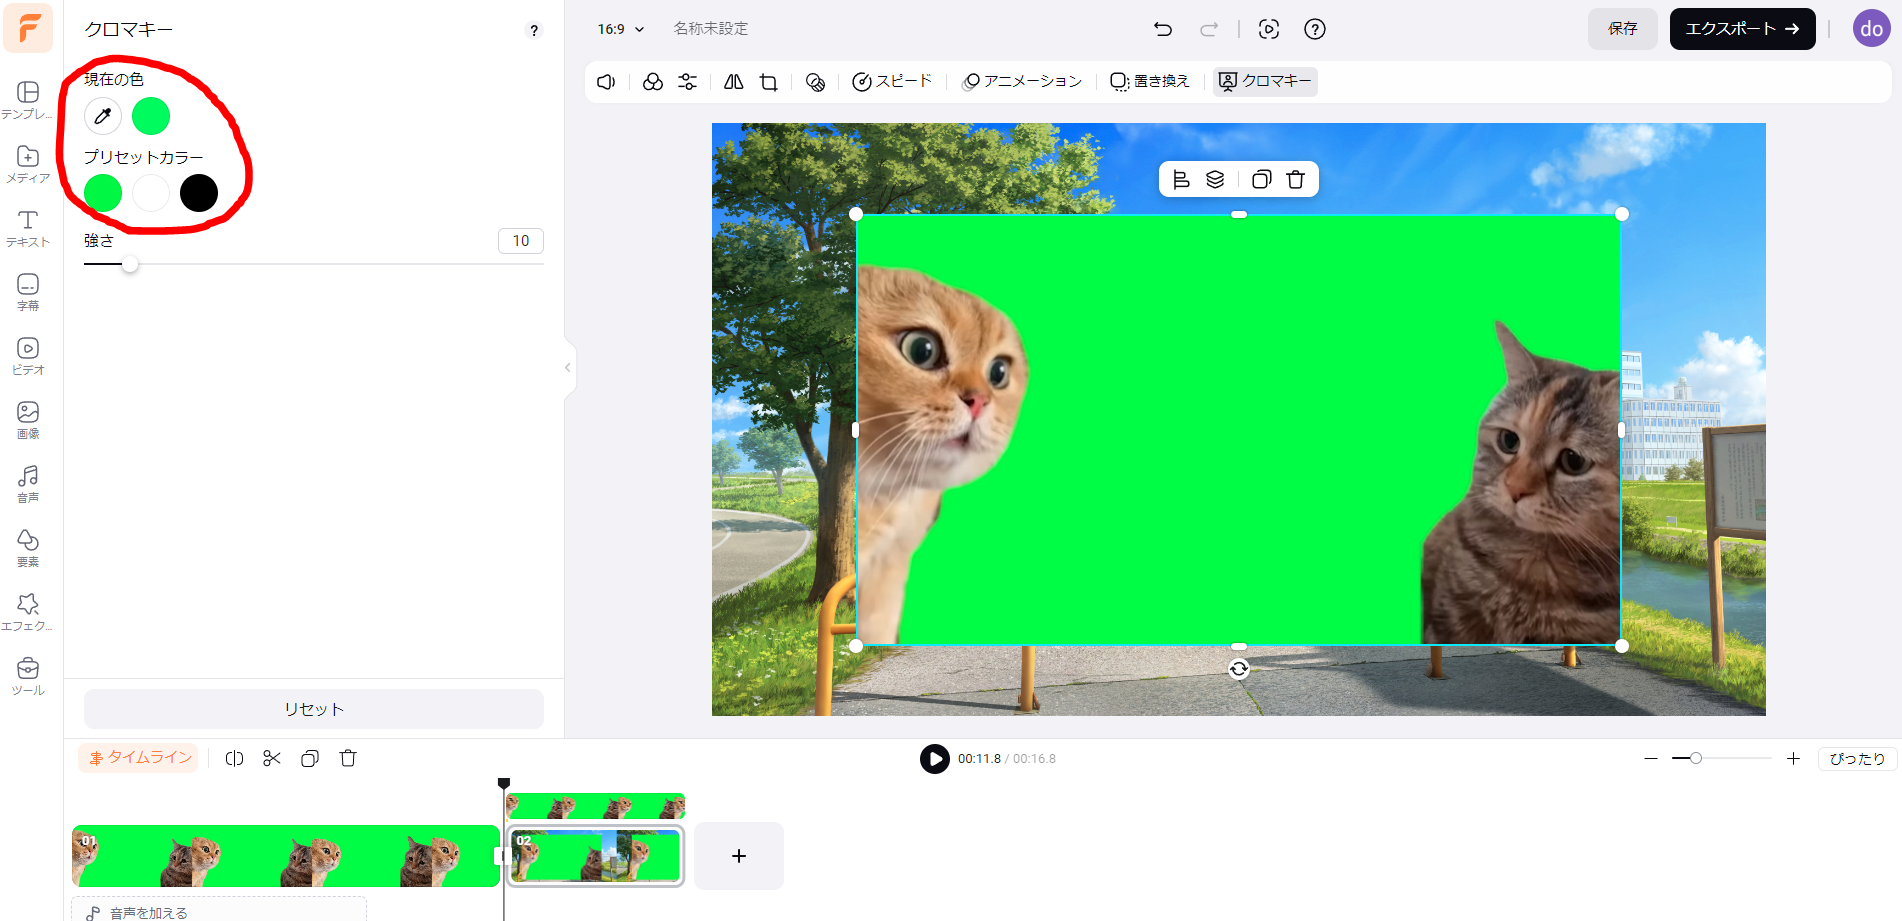 dorublog | 猫ミームにも便利 ブラウザー上で簡単に動画編集できるソフトFlexClipに3つの新機能が追加